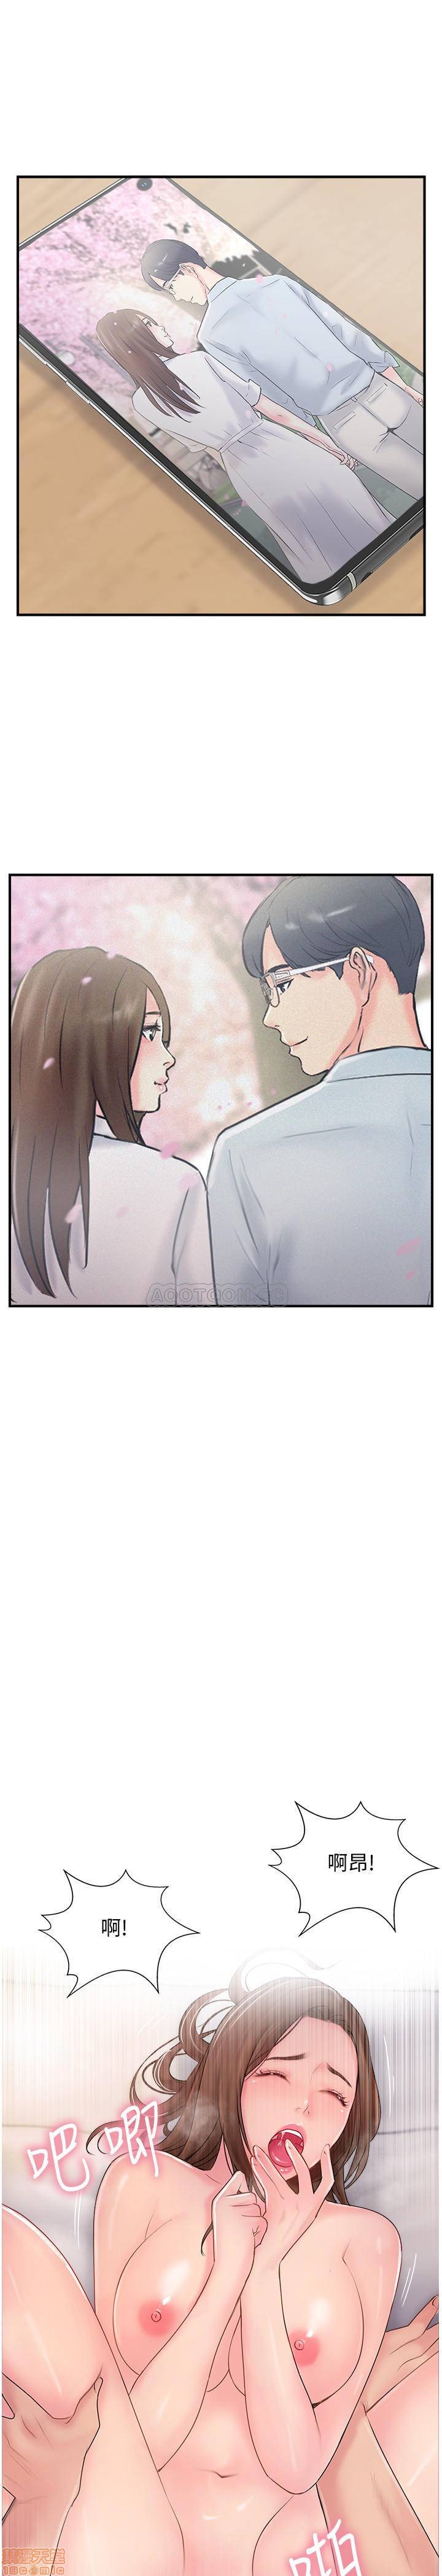 《完美新伴侣》漫画 第16话 - 初嚐偷情的快感